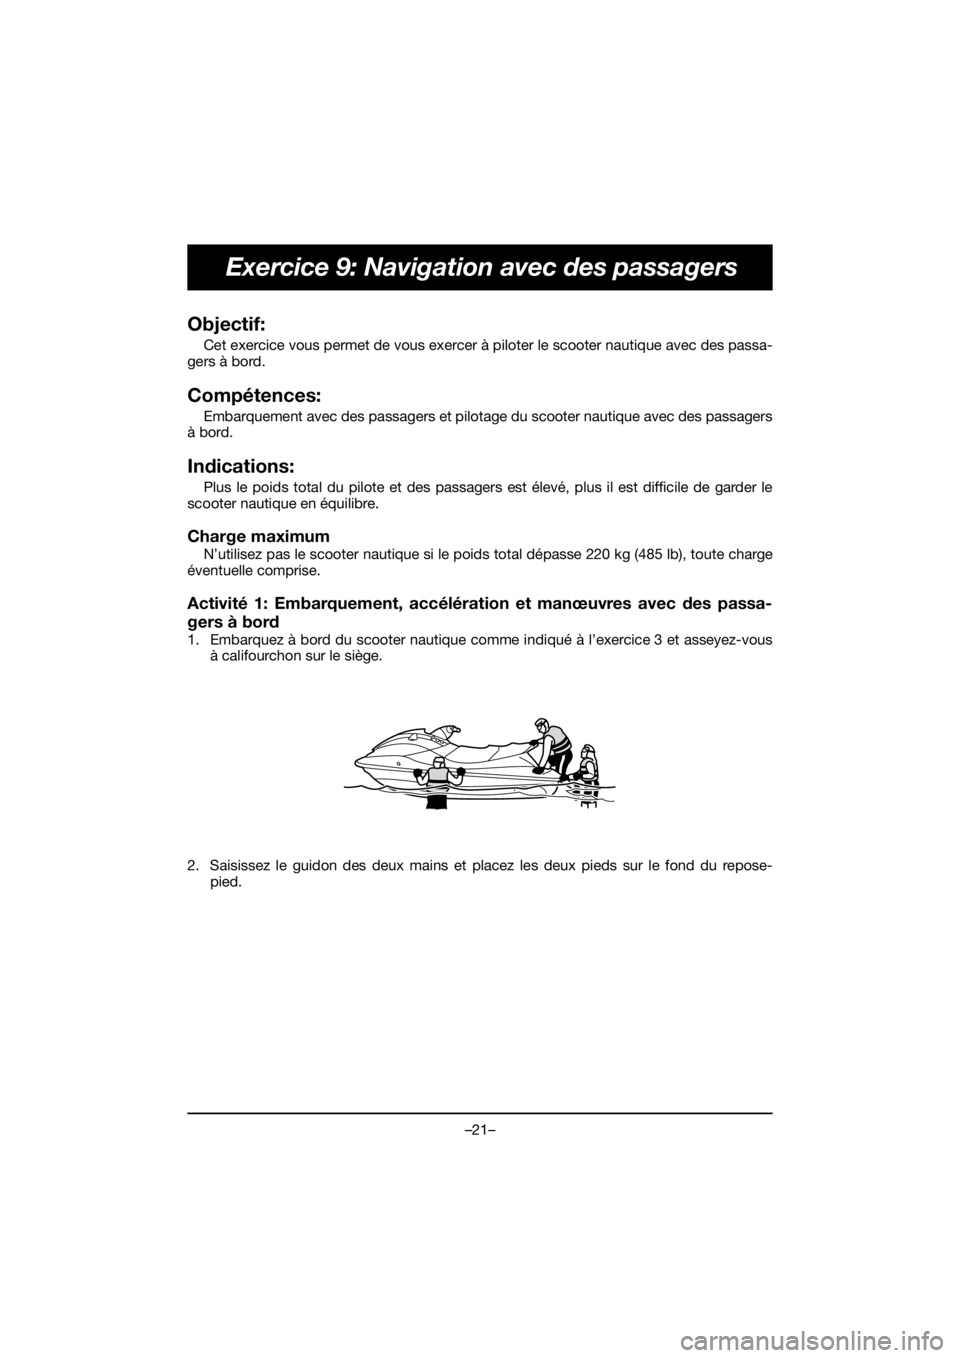 YAMAHA EX DELUXE 2019  Manuale de Empleo (in Spanish) –21–
Exercice 9: Navigation avec des passagers
Objectif: 
Cet exercice vous permet de vous exercer à piloter le scooter nautique avec des passa-
gers à bord.
Compétences: 
Embarquement avec des